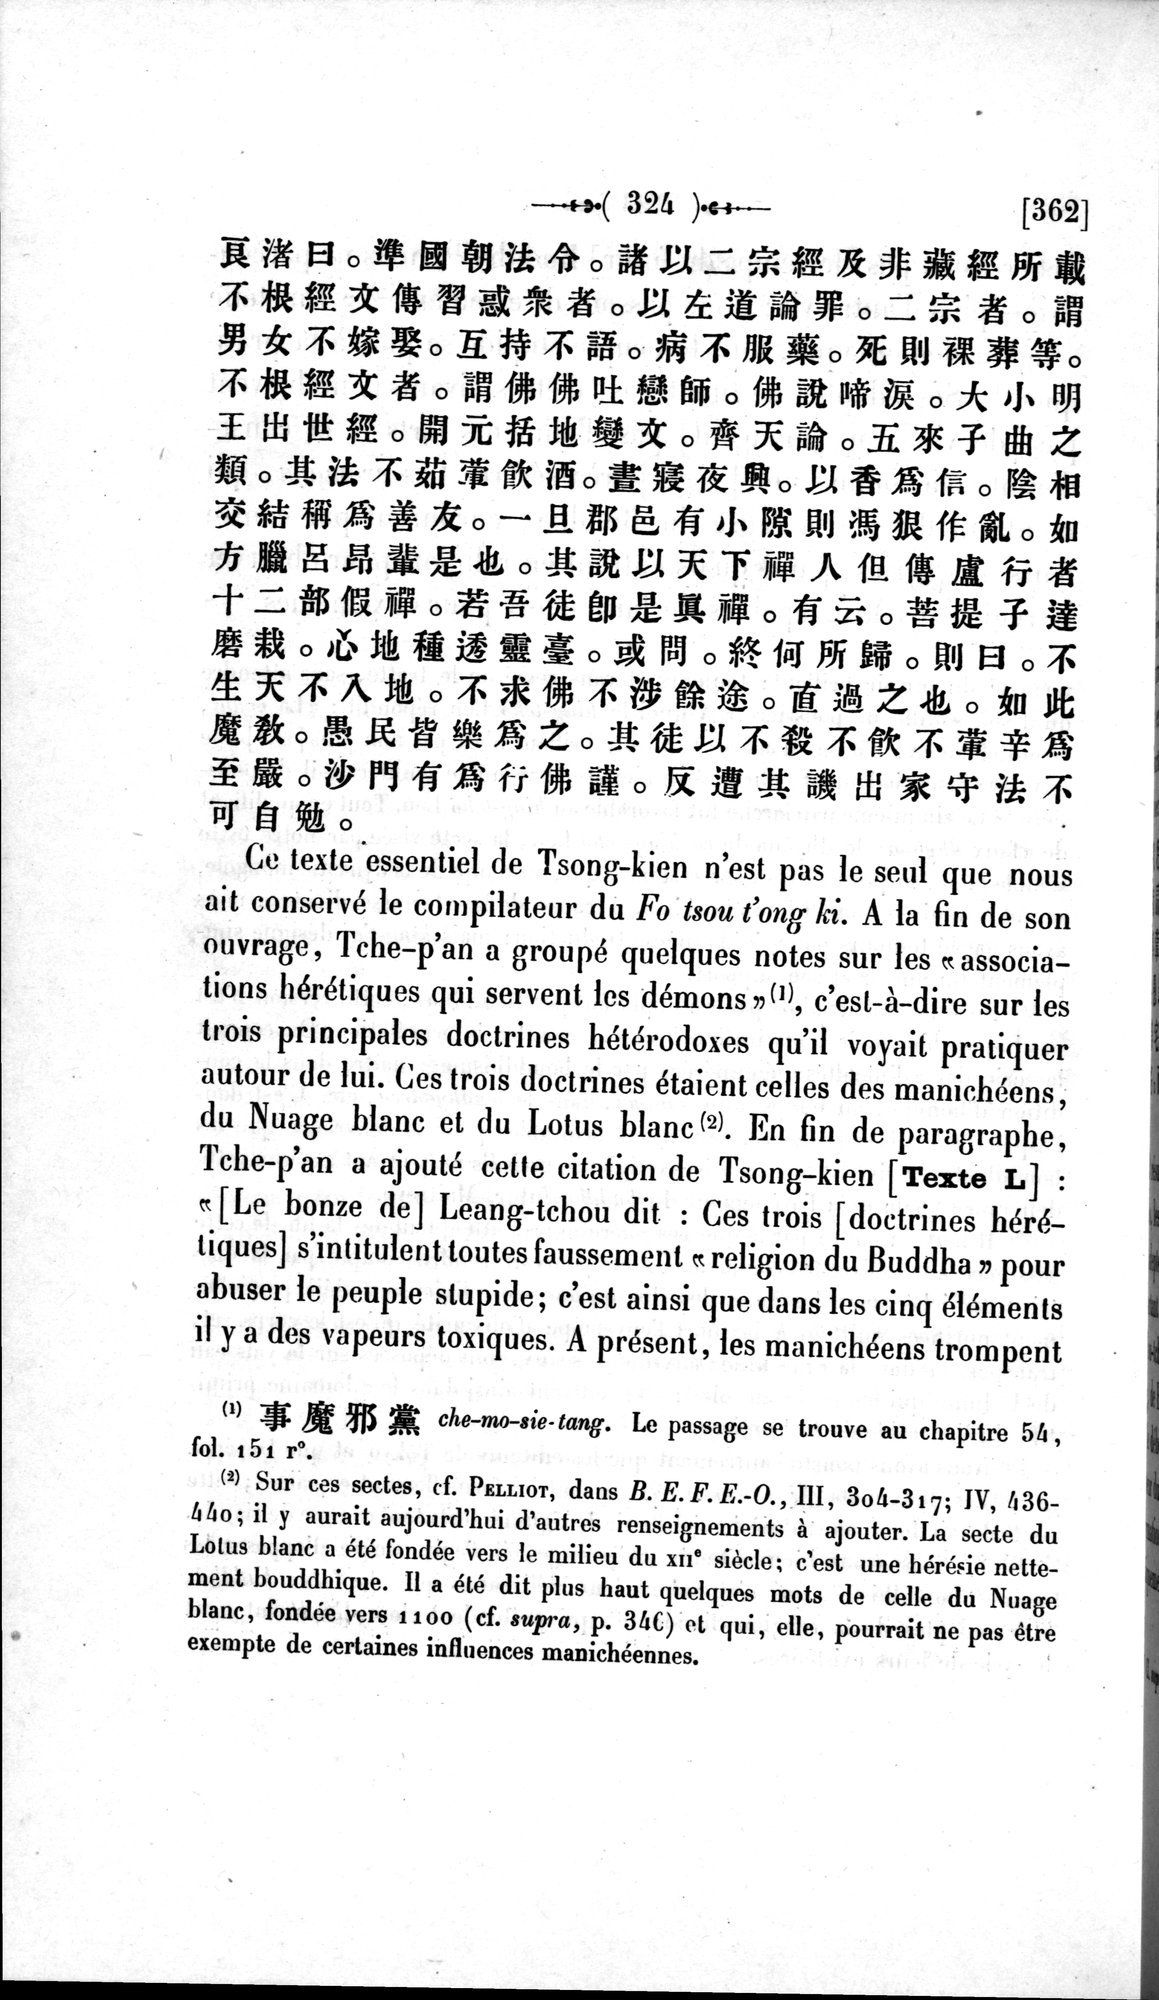 Un traité manichéen retrouvé en Chine : vol.1 / Page 334 (Grayscale High Resolution Image)